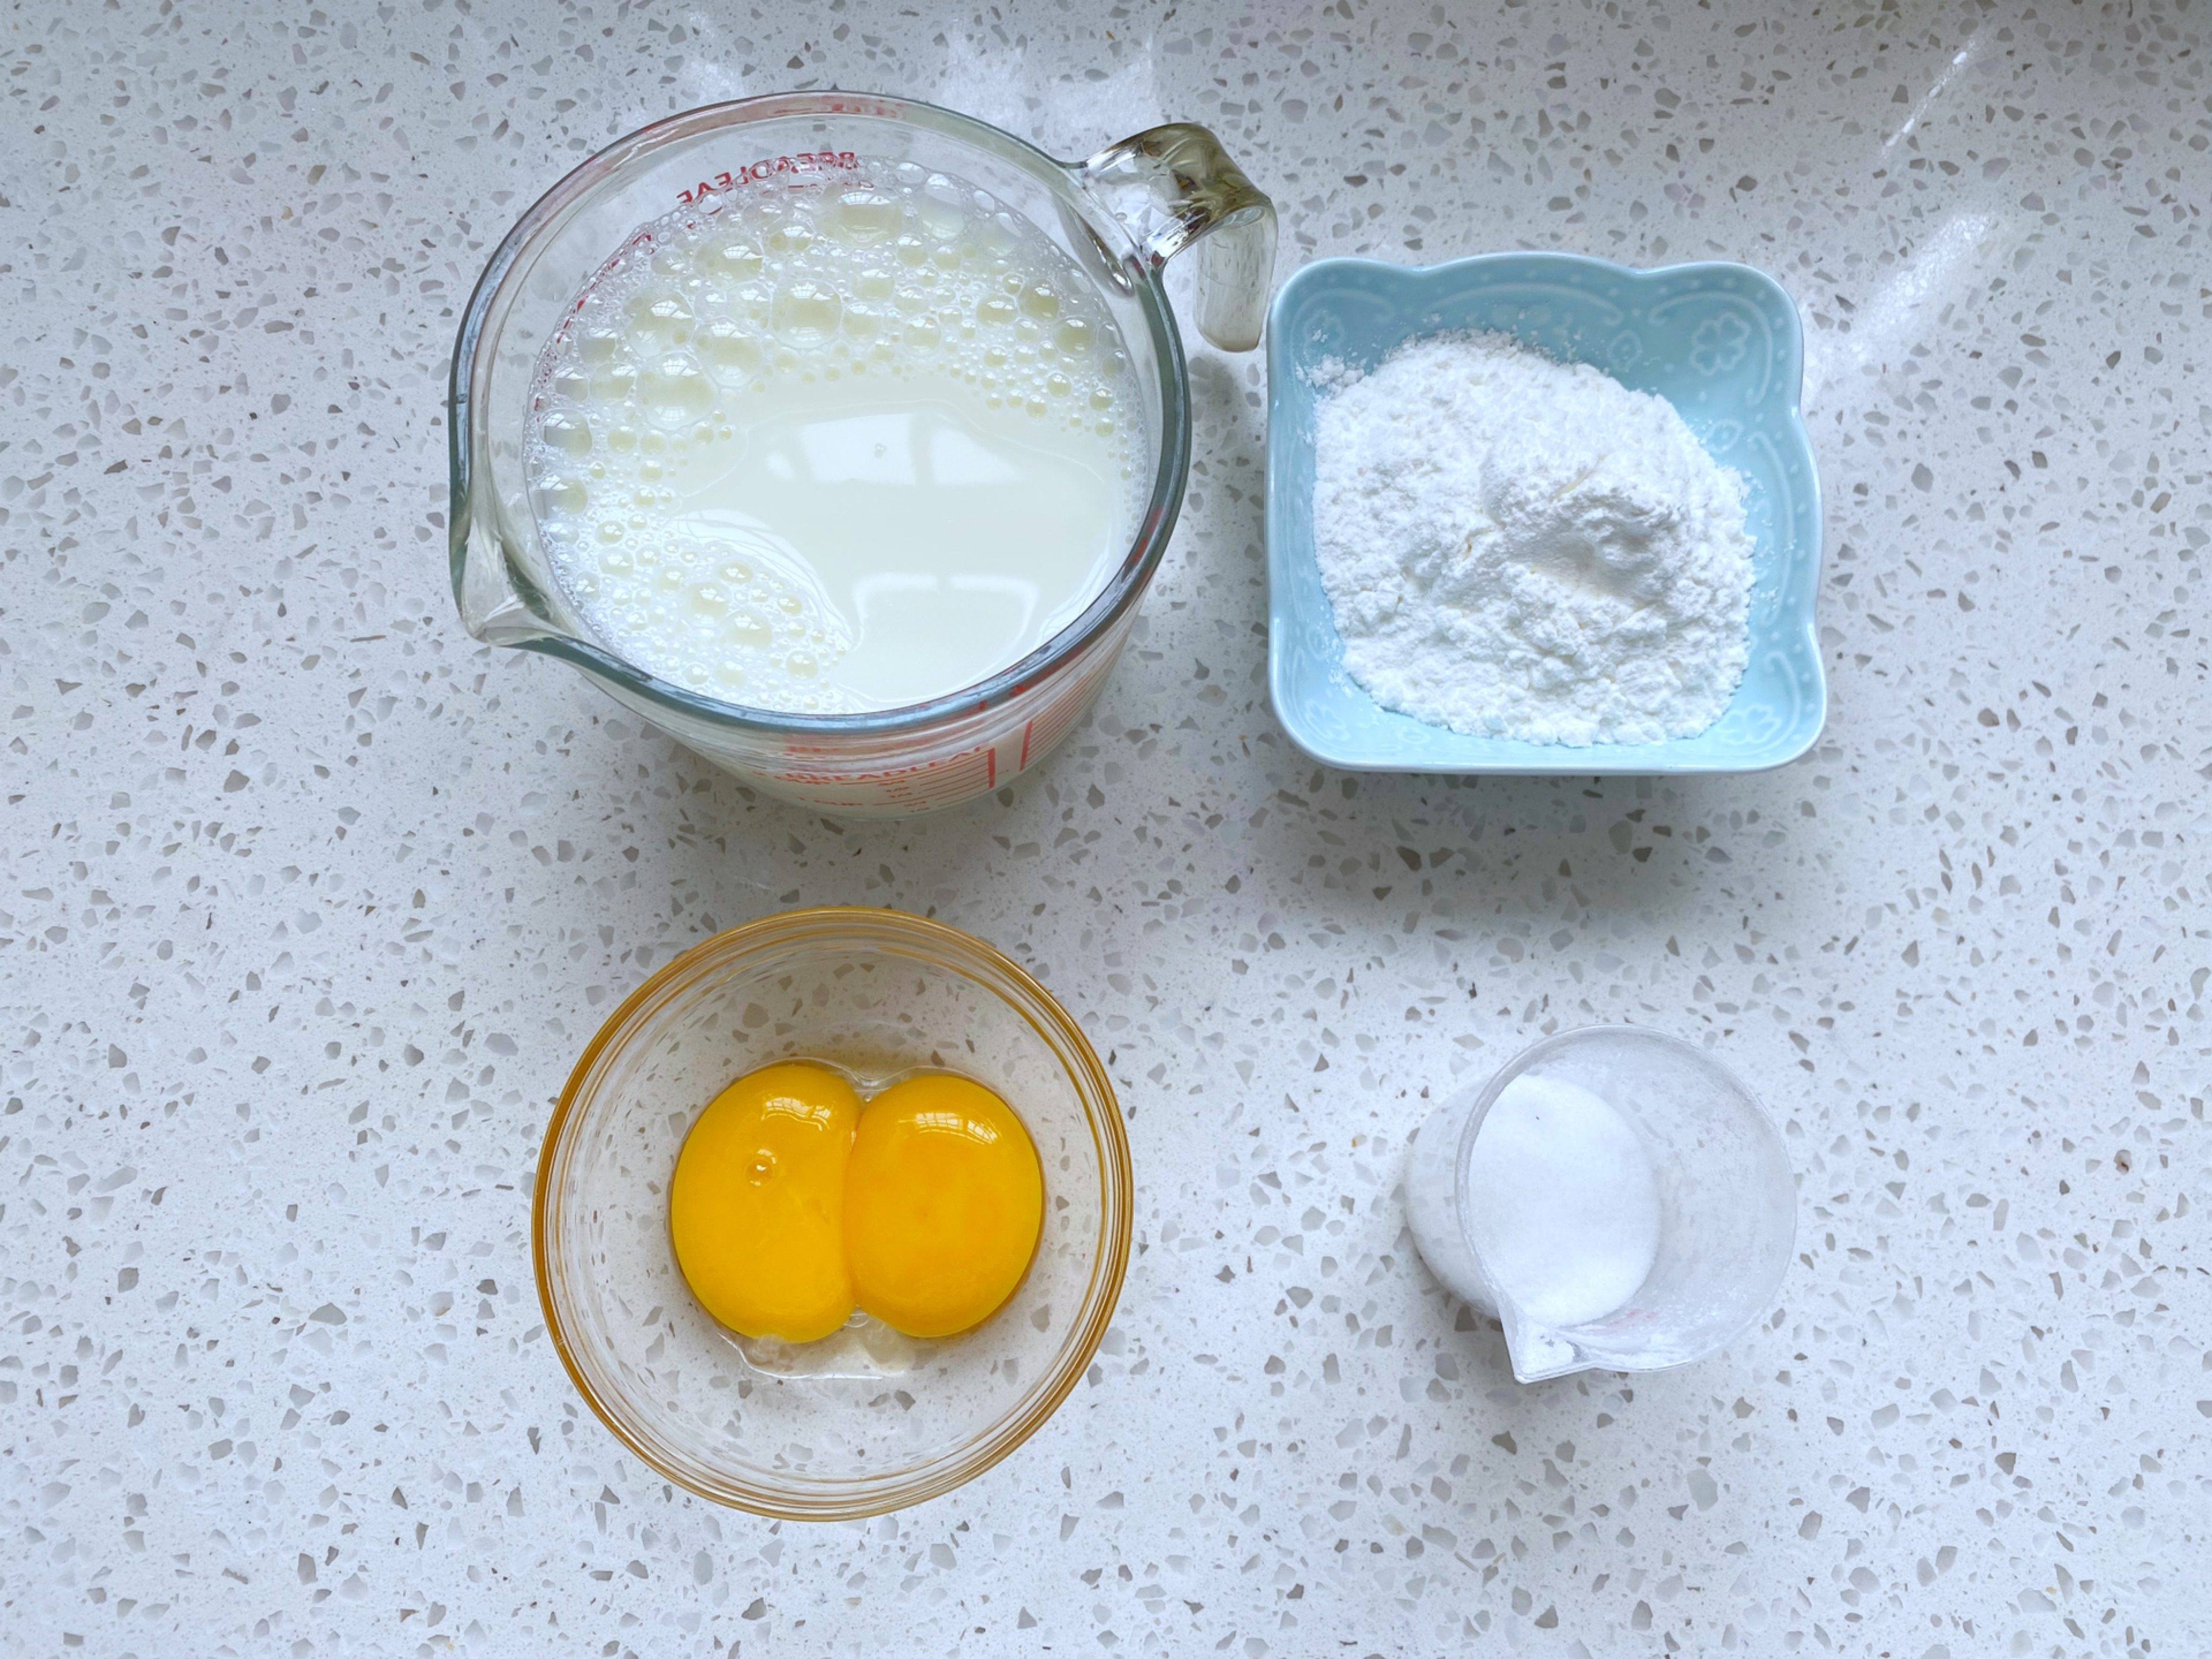 Steps for baked milk